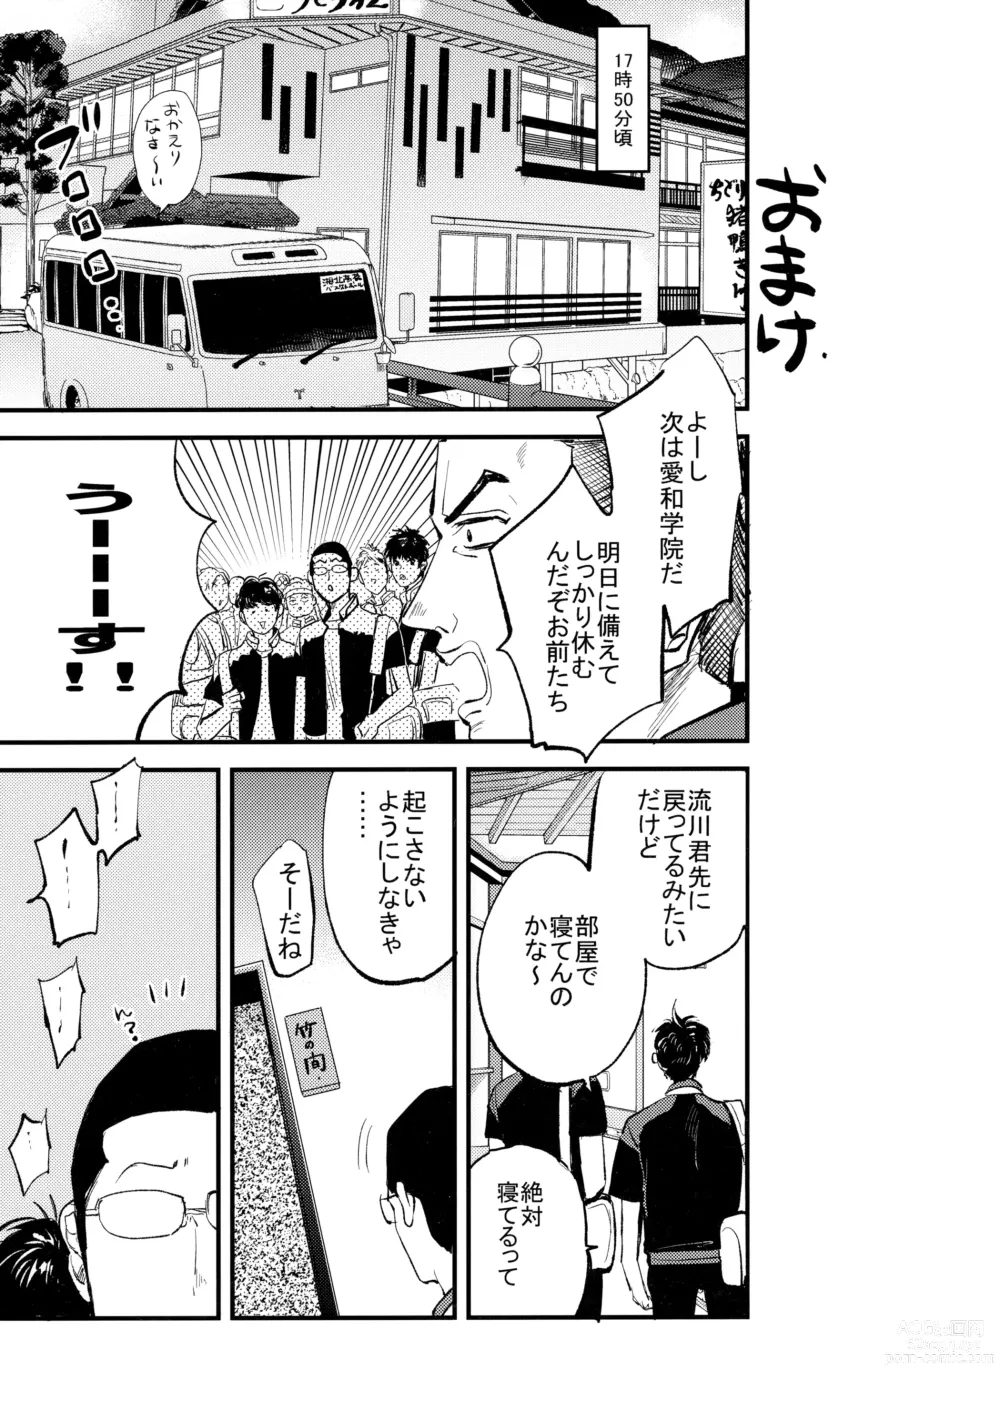 Page 72 of doujinshi Hajimete no,